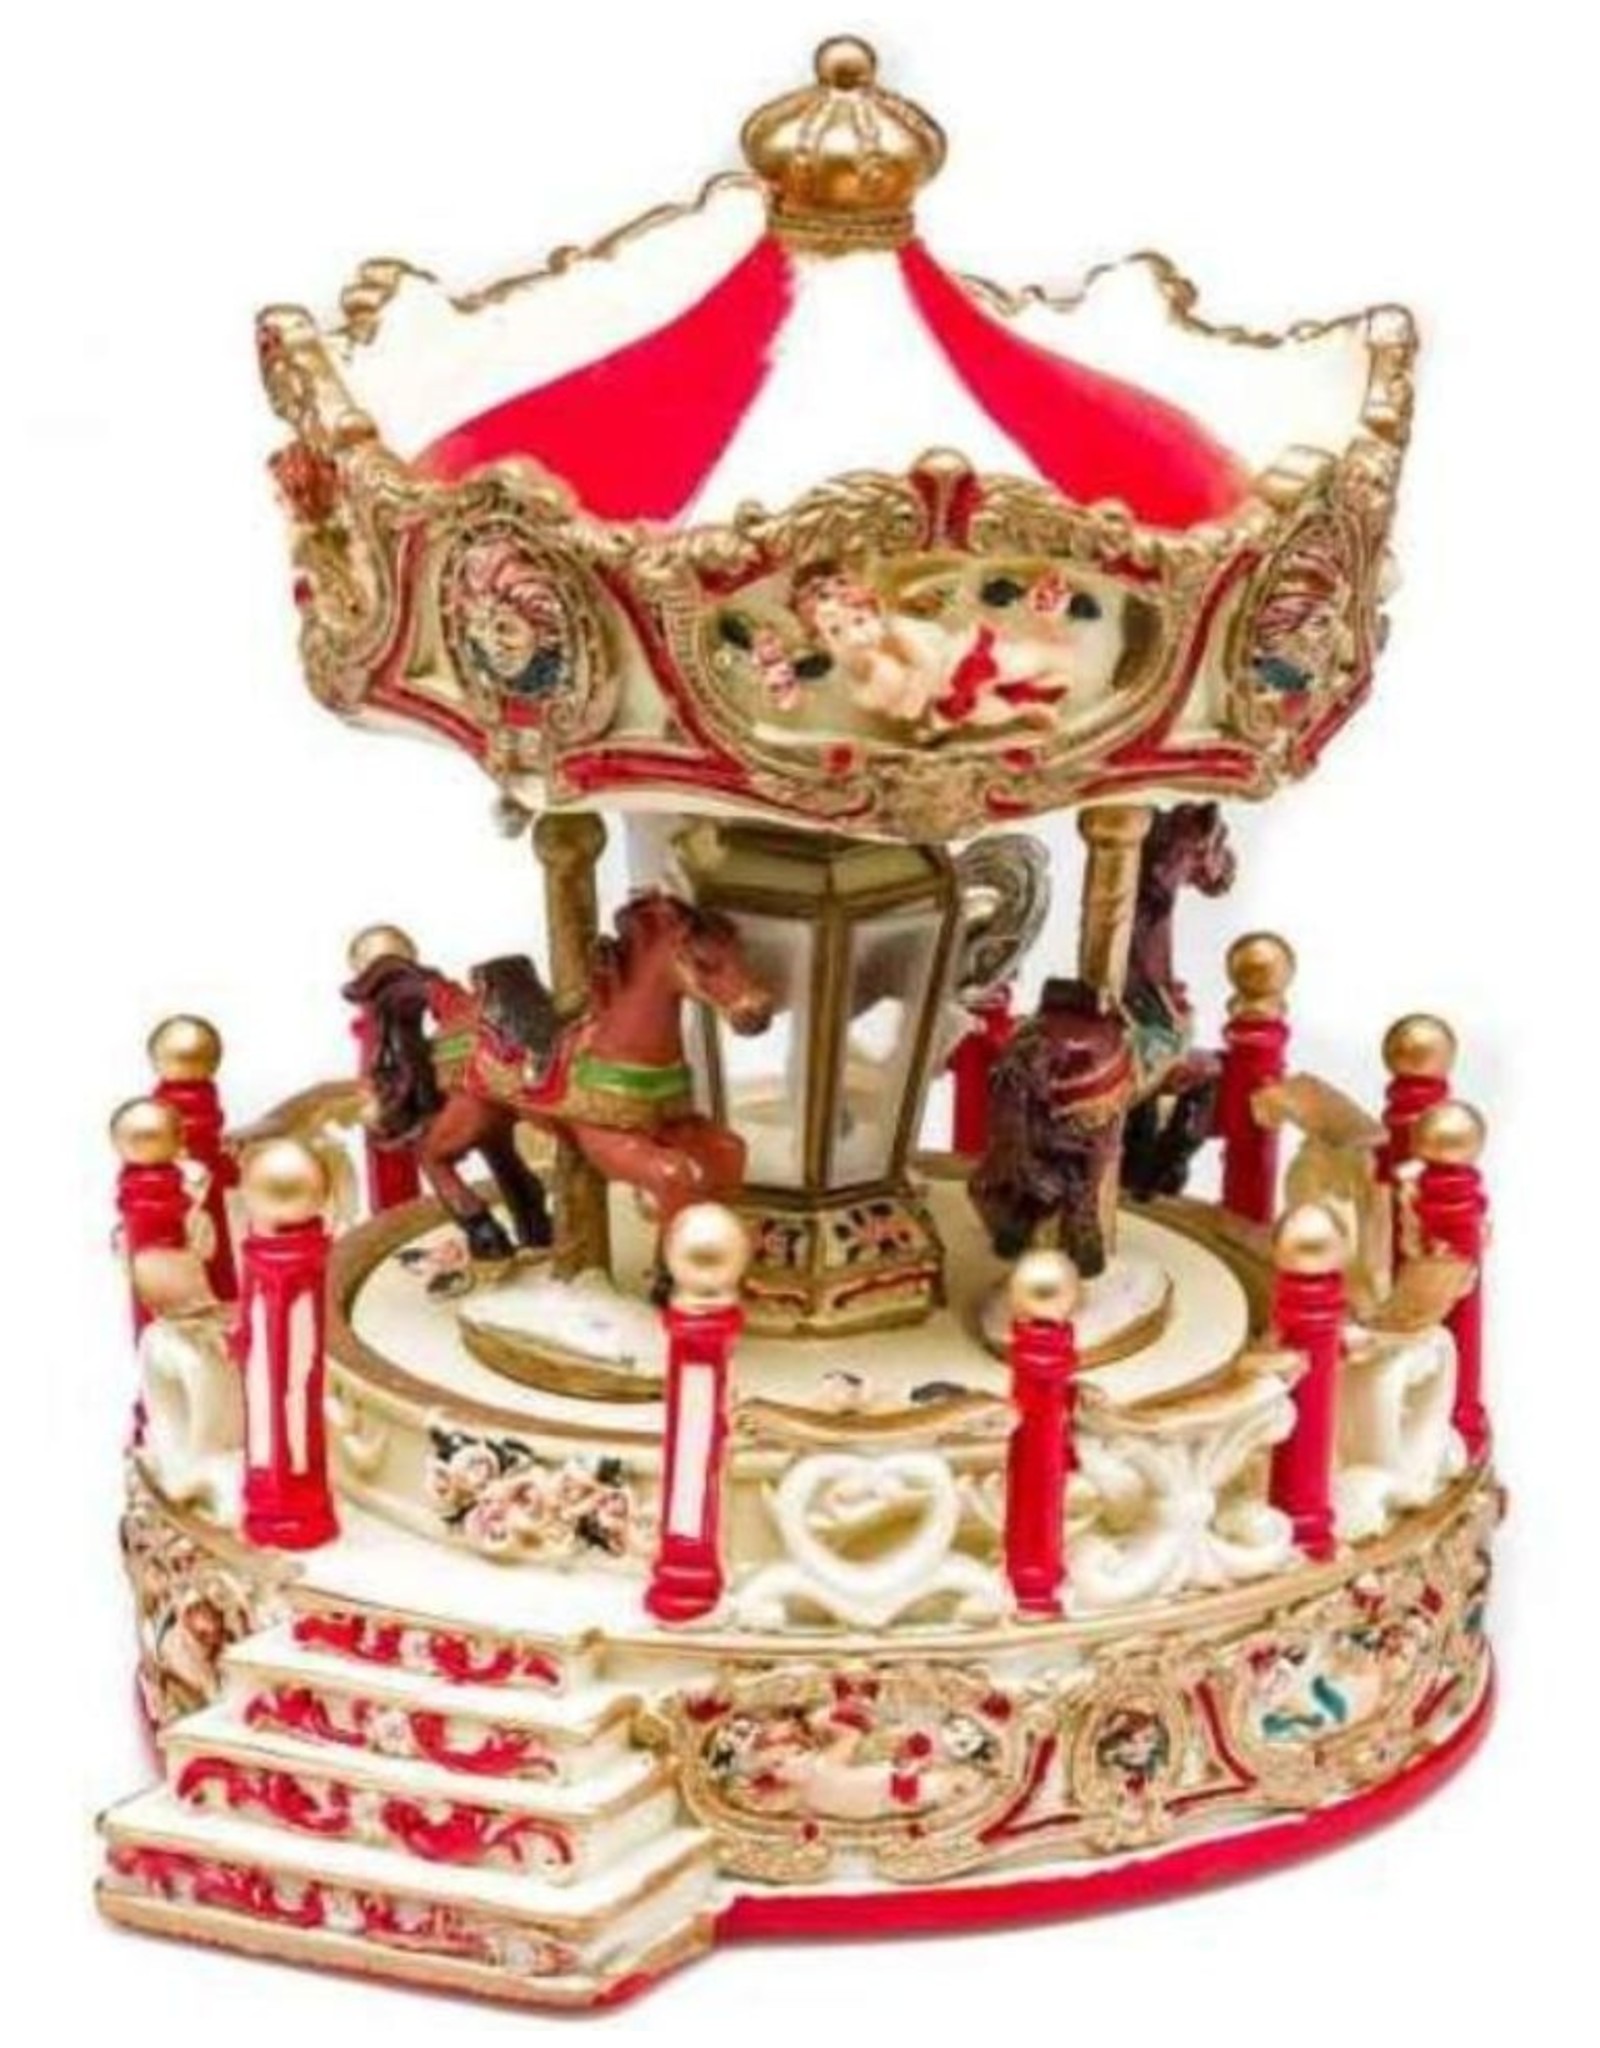 Trukado Giftware & Lifestyle - Music box Vintage Carousel (large)